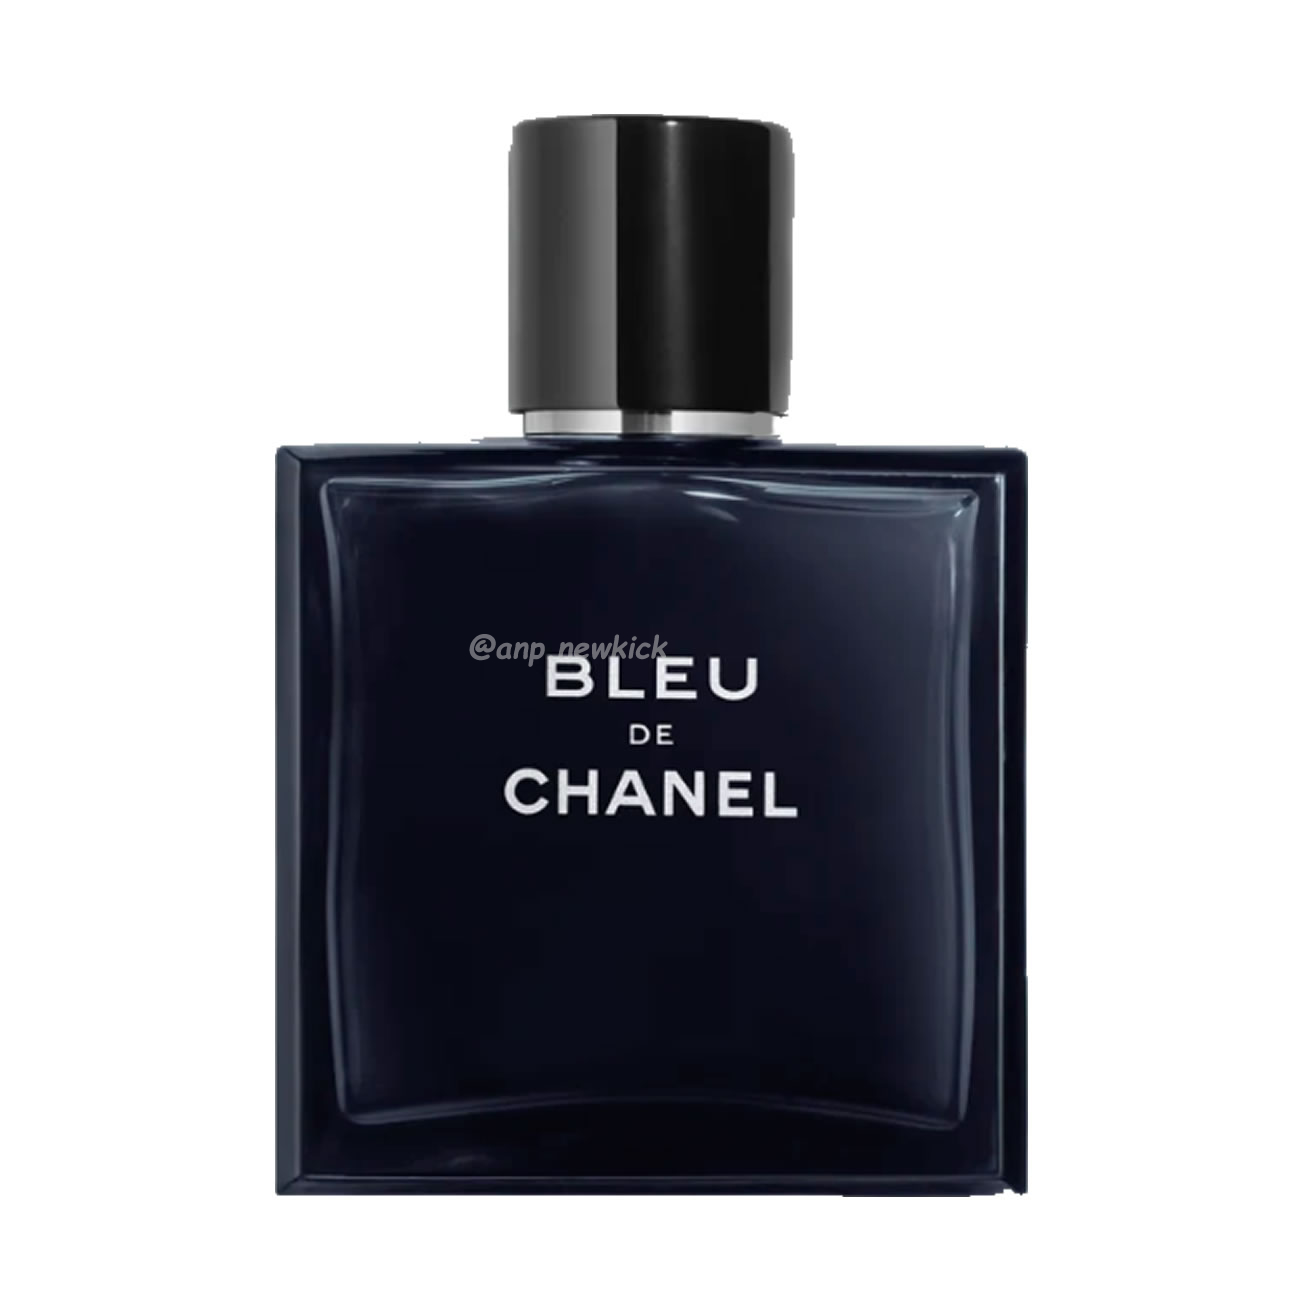 Chanel Bleu De Edt 100ml (1) - newkick.org